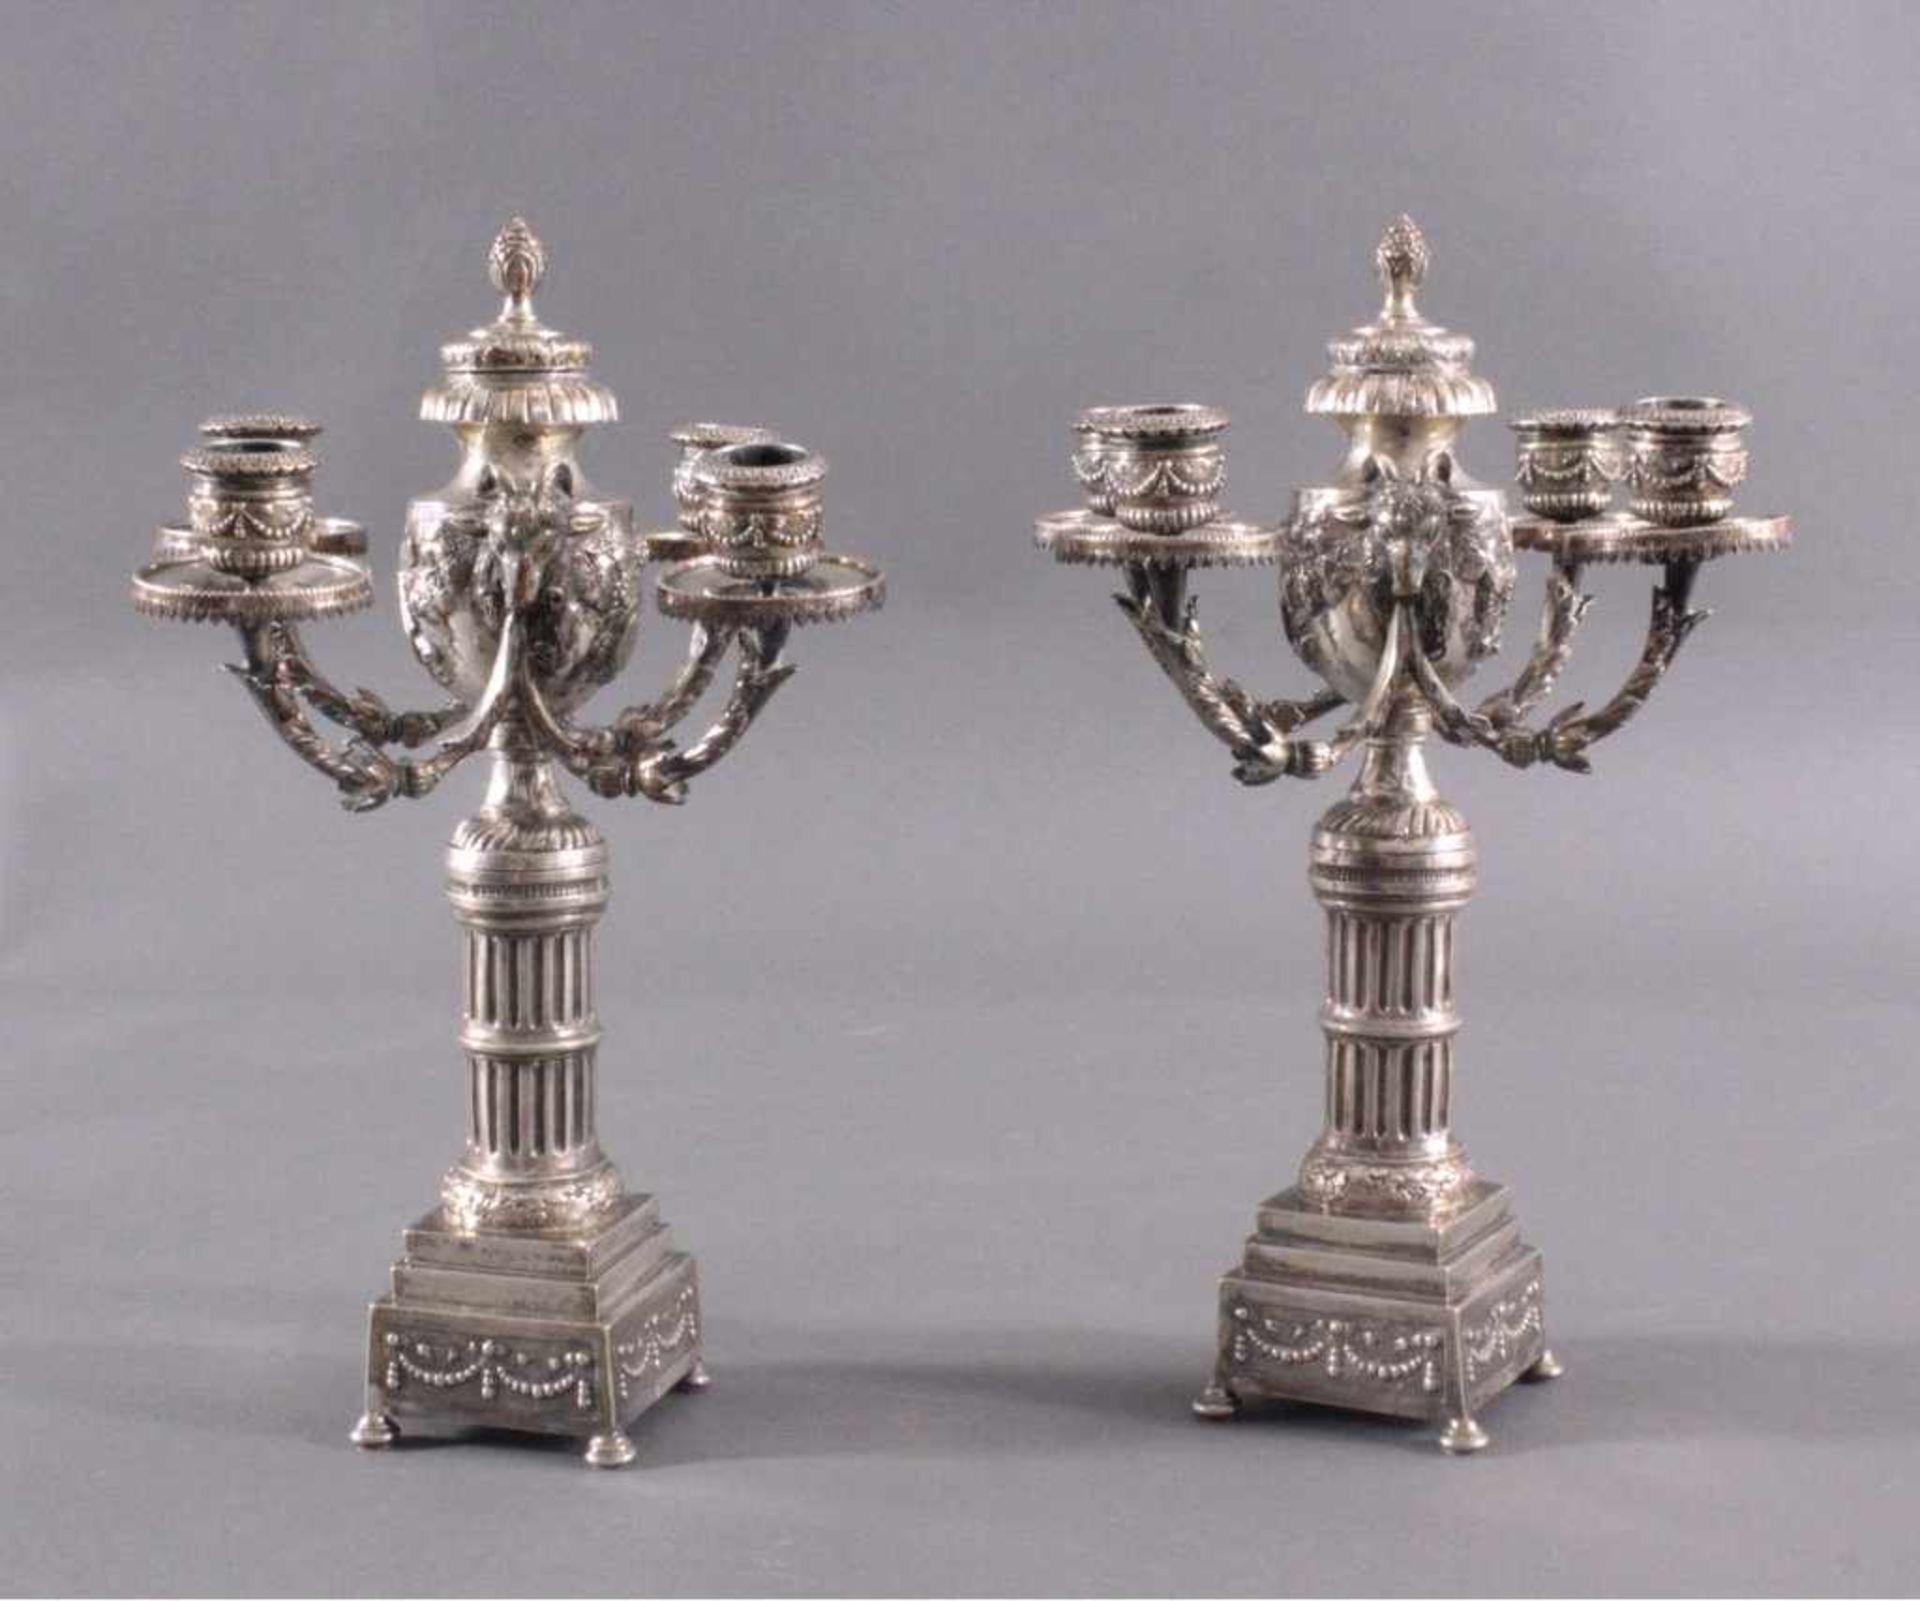 Paar silberne Empire KerzenleuchterUm 1800, auf viereckigen Sockel, getragen von vier rundenFüßen. - Image 2 of 8